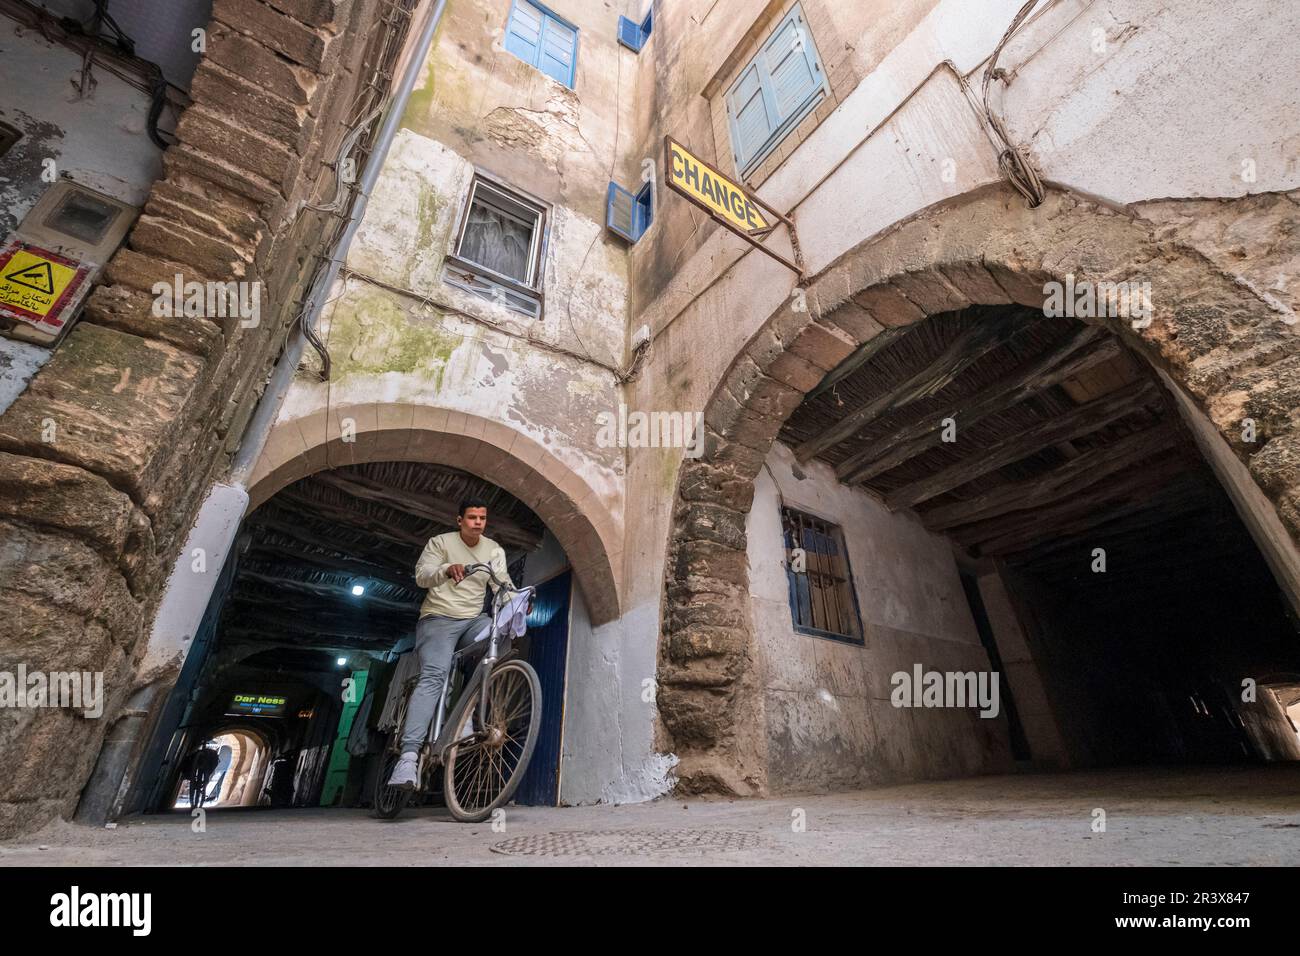 Garçon sur un vélo traversant Skala de la Kasbah, Essaouira, maroc, afrique. Banque D'Images